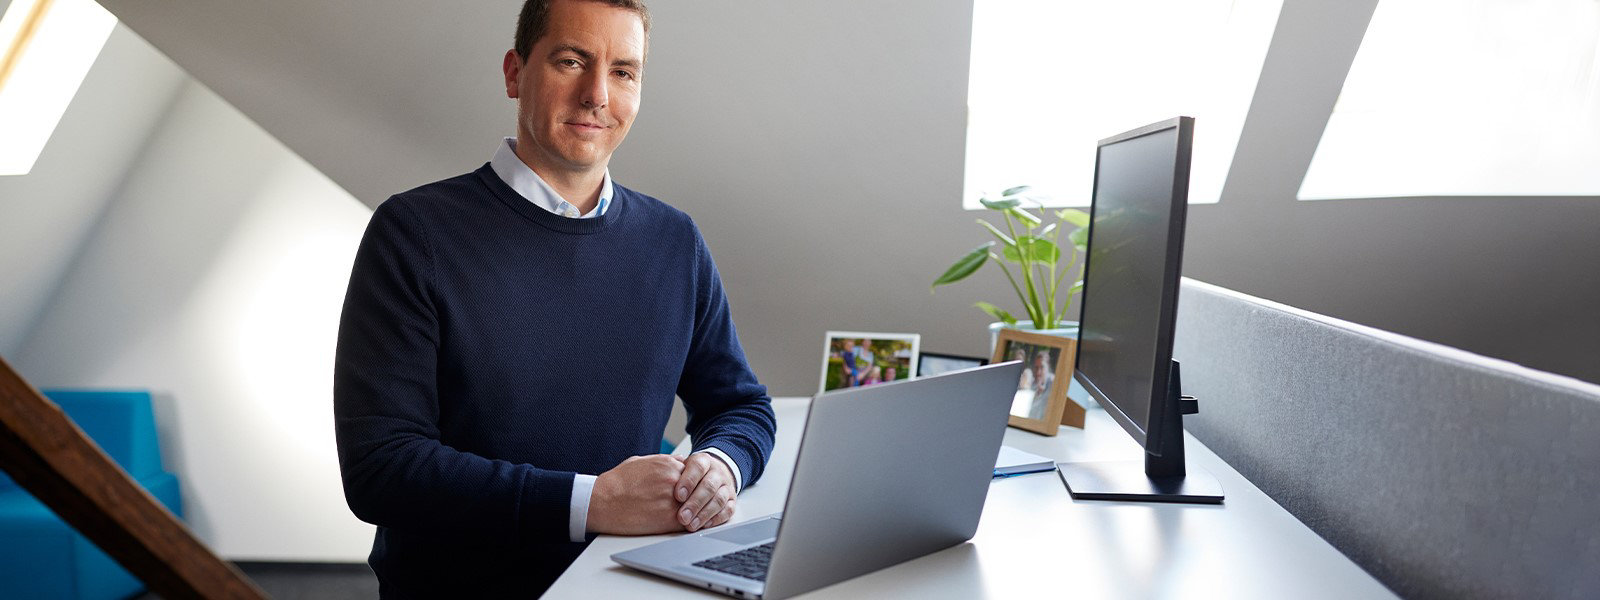 Een man op kantoor staat bij een bureau met daarop een geopende Windows-laptop en een monitor ernaast